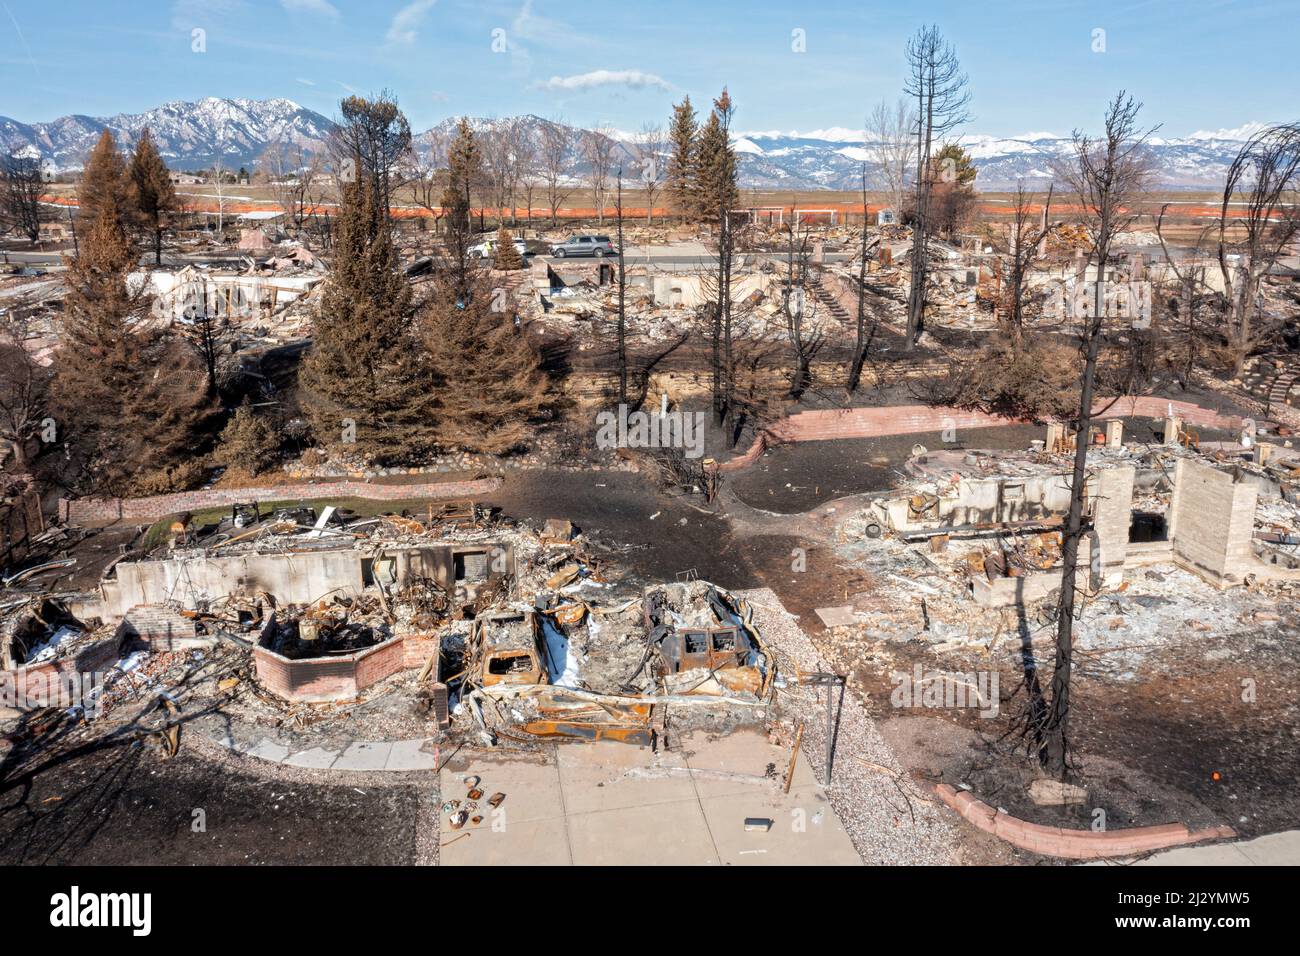 Louisville, Colorado - die Überreste nach dem Marshall Fire, dem zerstörerischsten Waldbrand Colorados, der im Dezember 2021 1.000 Häuser zerstörte. Das Fi Stockfoto